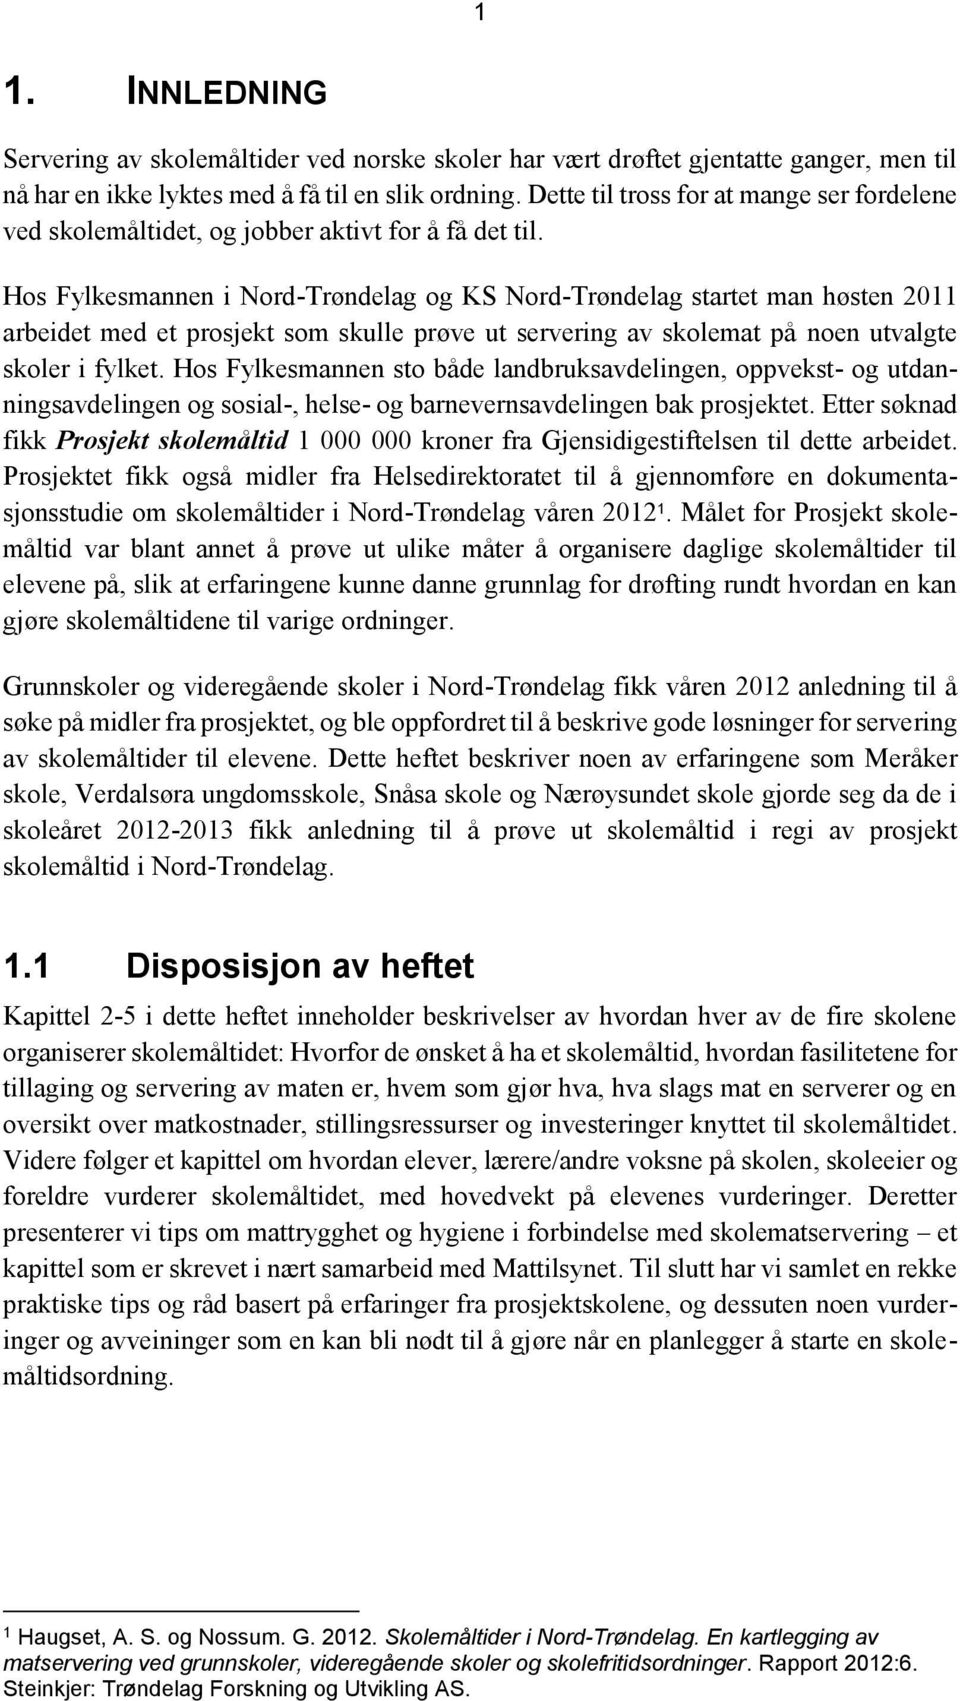 Hos Fylkesmannen i Nord-Trøndelag og KS Nord-Trøndelag startet man høsten 2011 arbeidet med et prosjekt som skulle prøve ut servering av skolemat på noen utvalgte skoler i fylket.